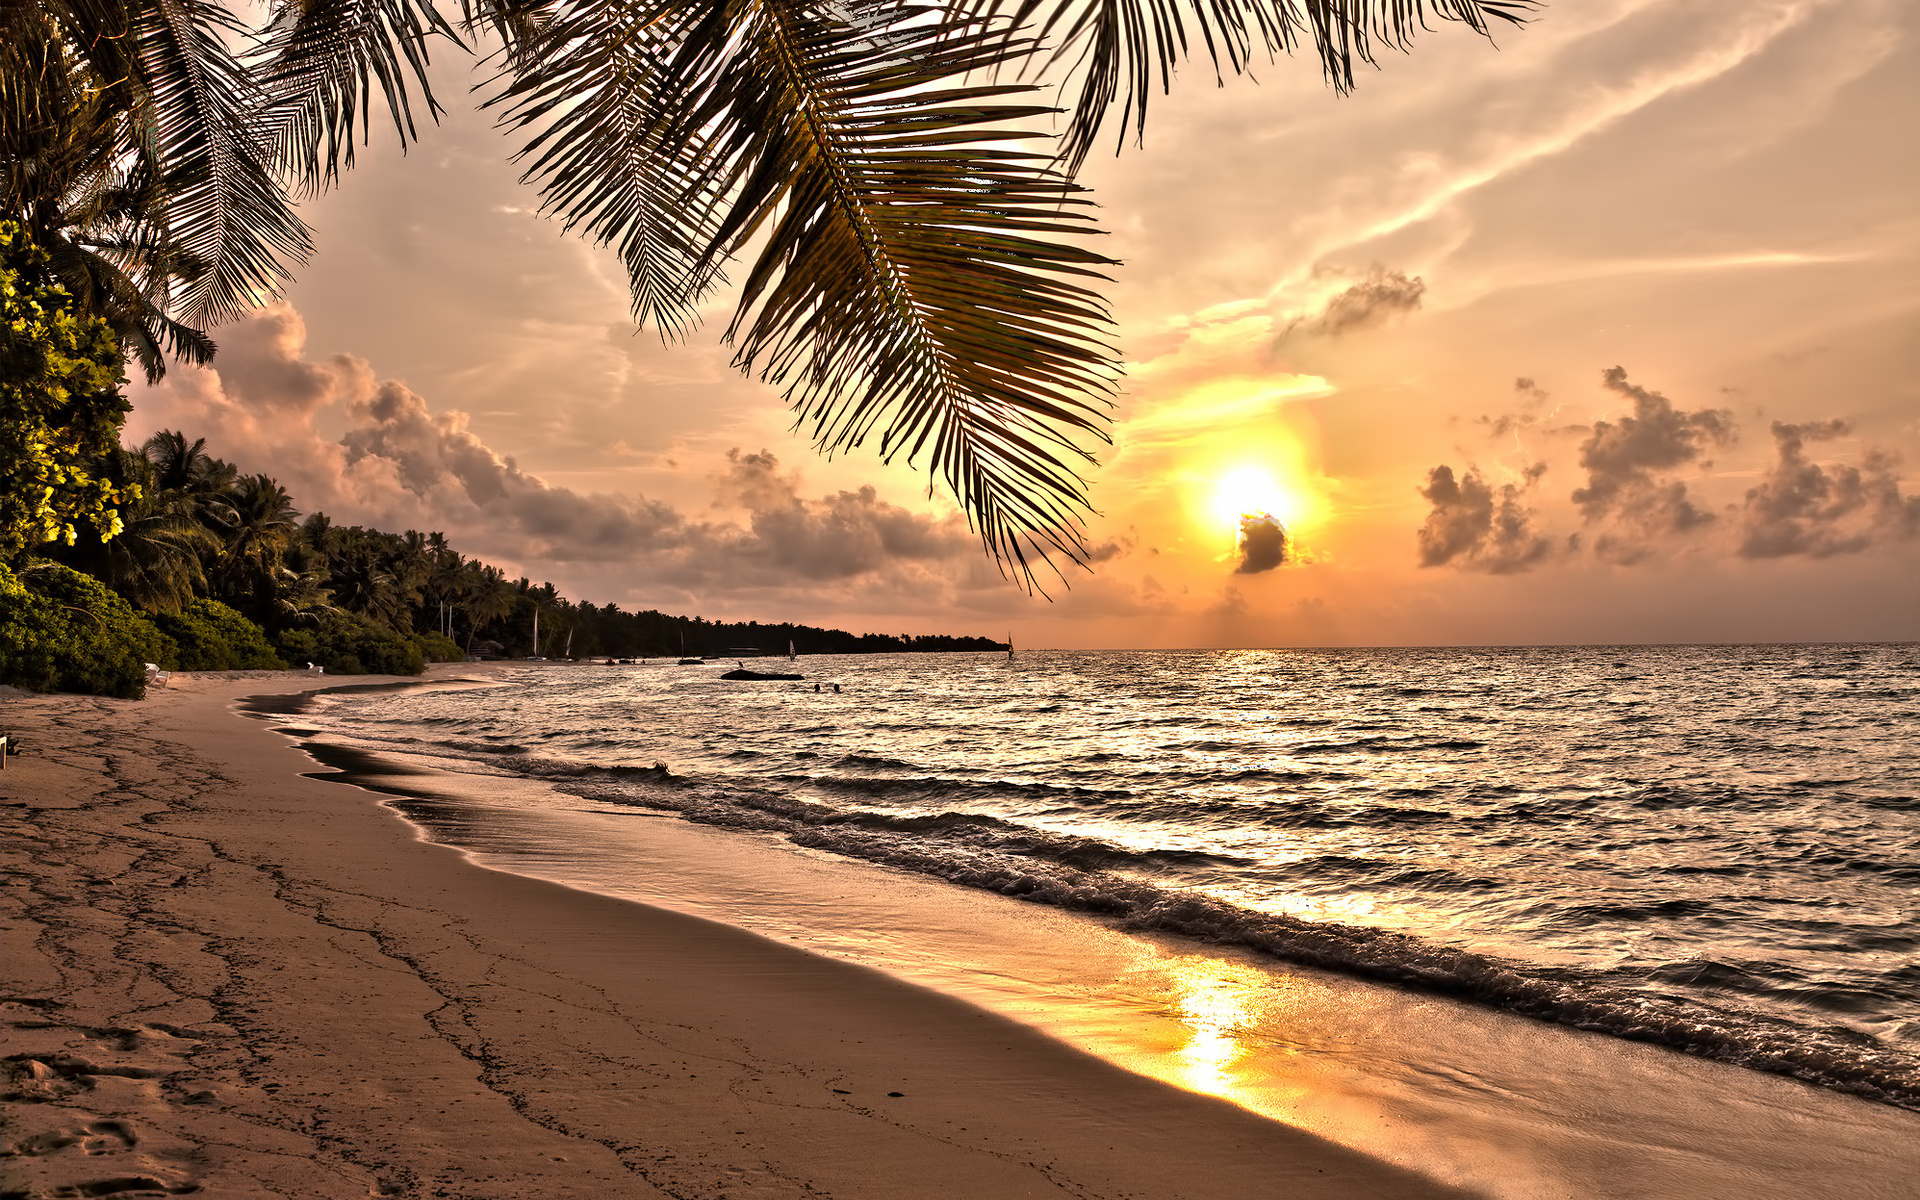 Bãi biển: Bãi biển là nơi lý tưởng để tránh xa những áp lực và tận hưởng những ngày nghỉ của bạn. Hãy nghỉ ngơi trong bóng râm của những cây dừa và tận hưởng những đợt sóng biển du dương.